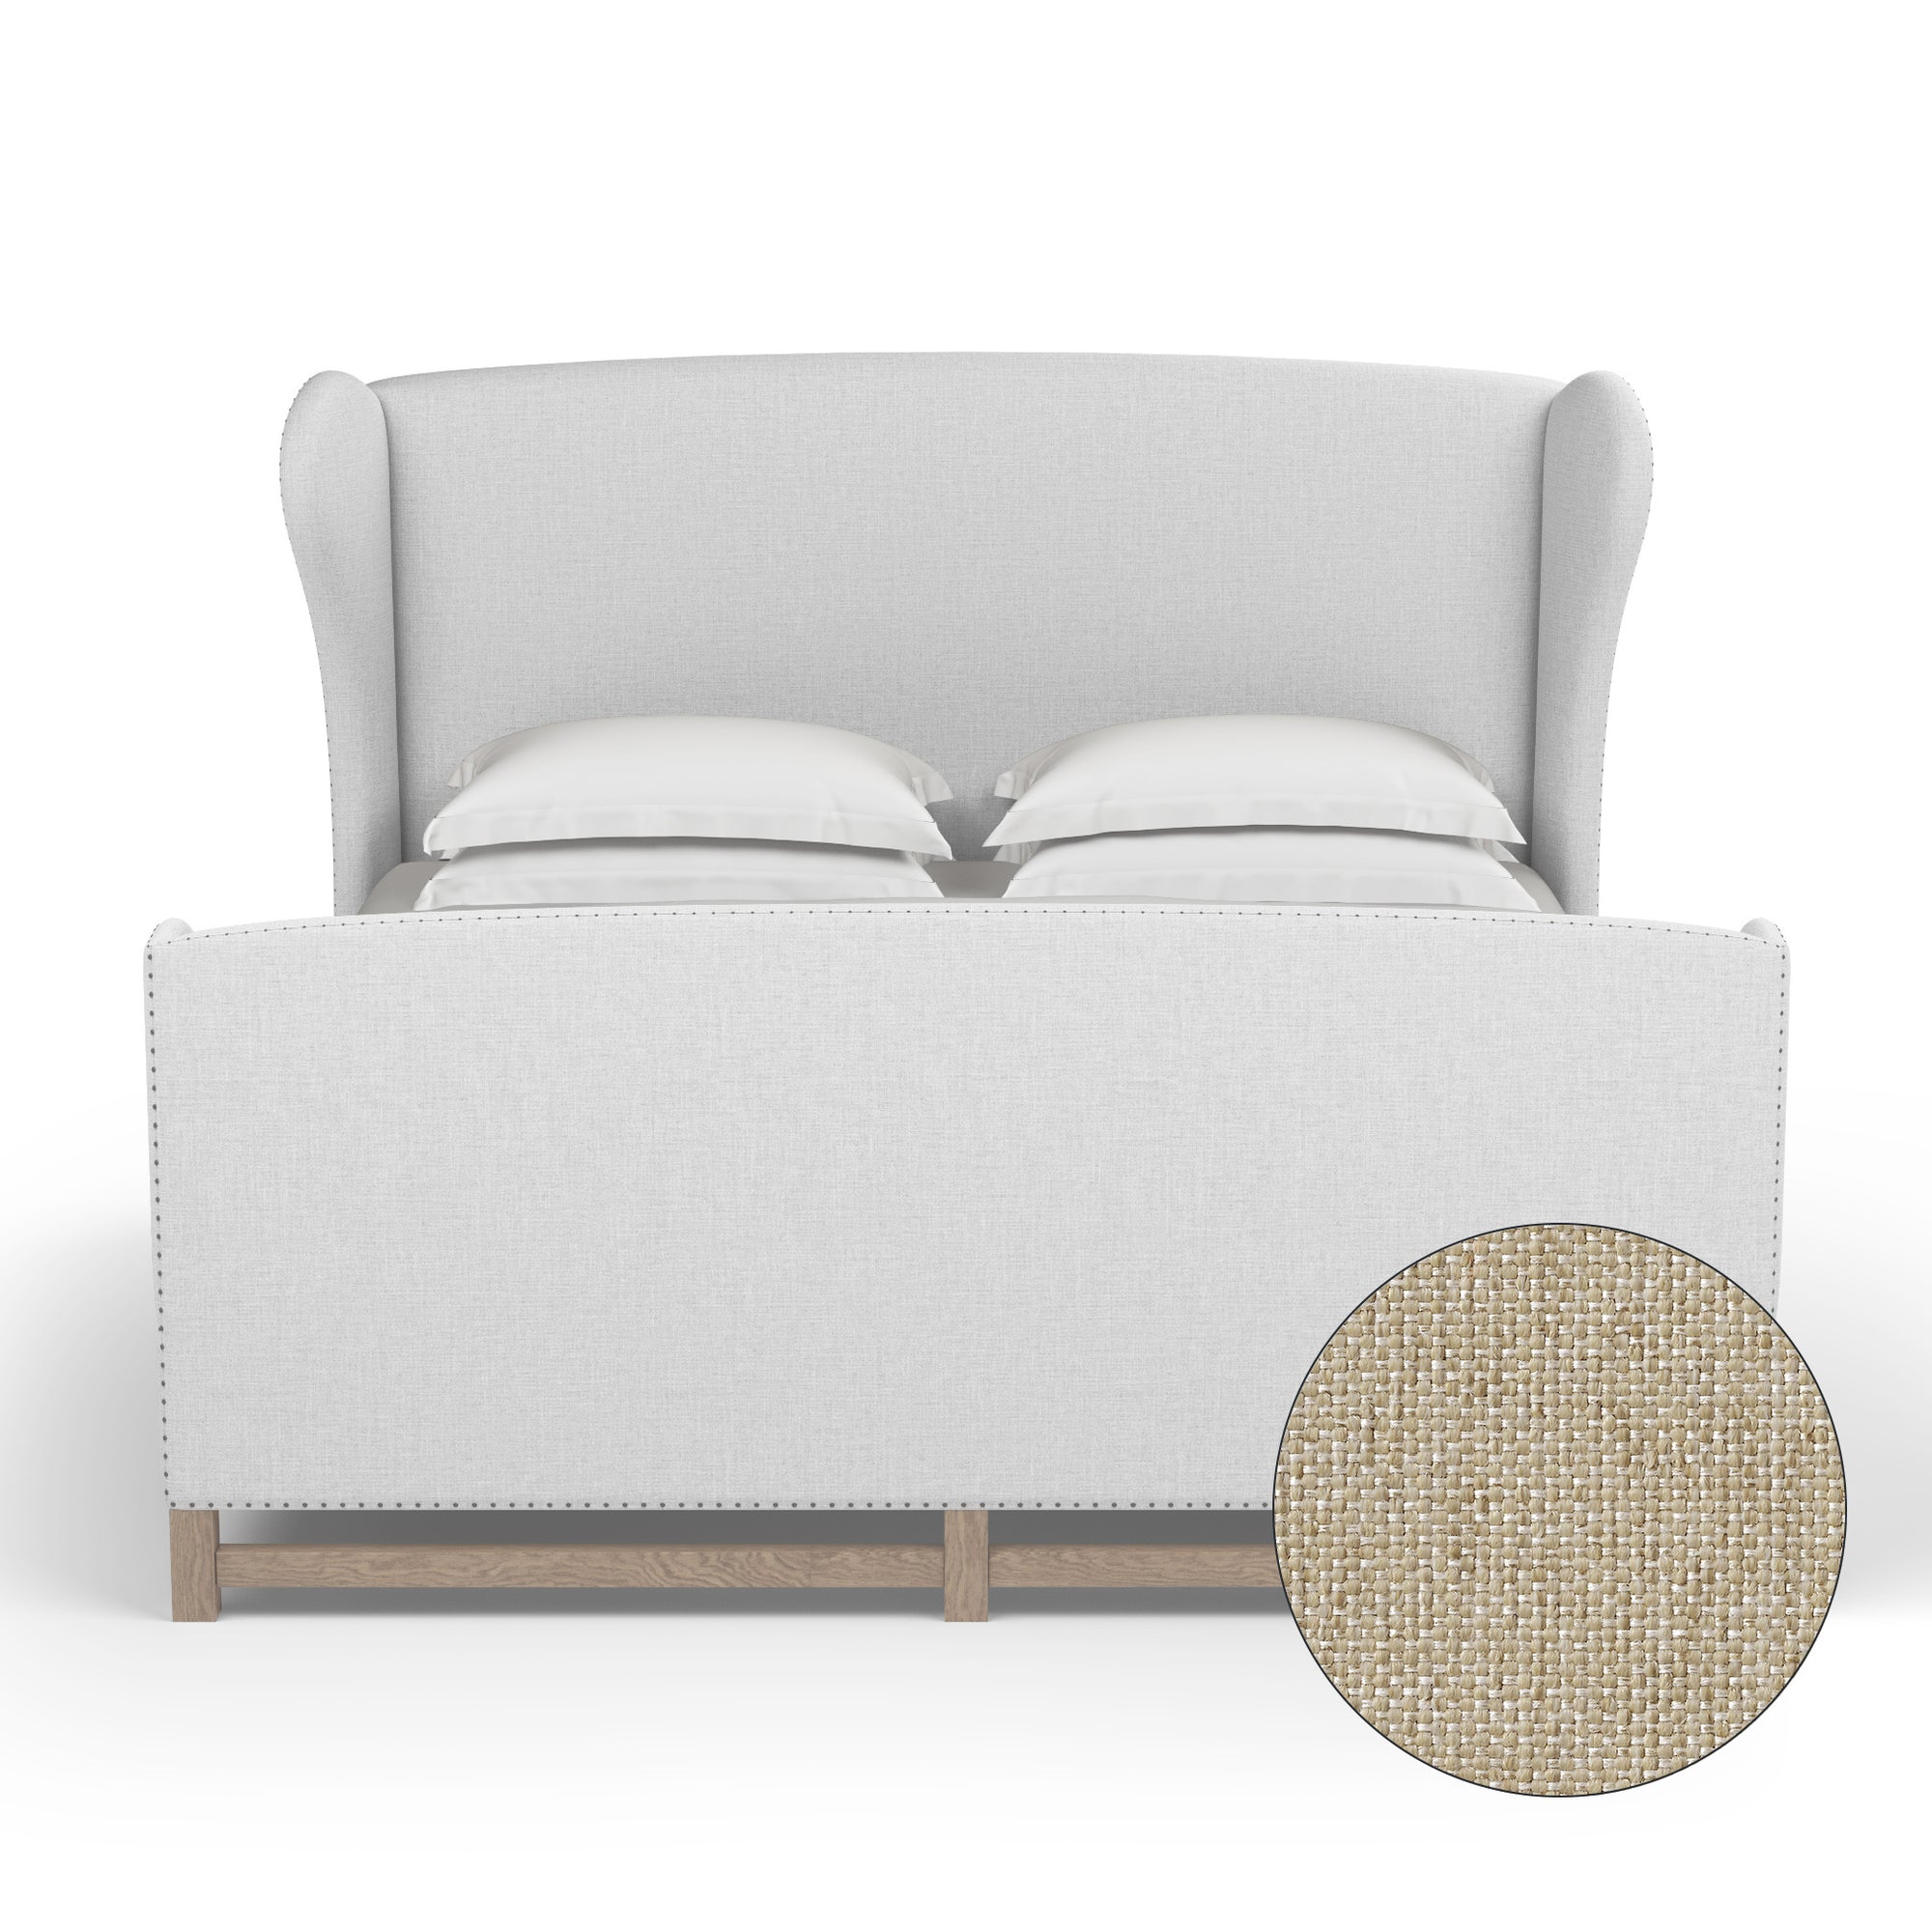 Herbert Wingback Bed w/ Footboard - Oyster Pebble Weave Linen